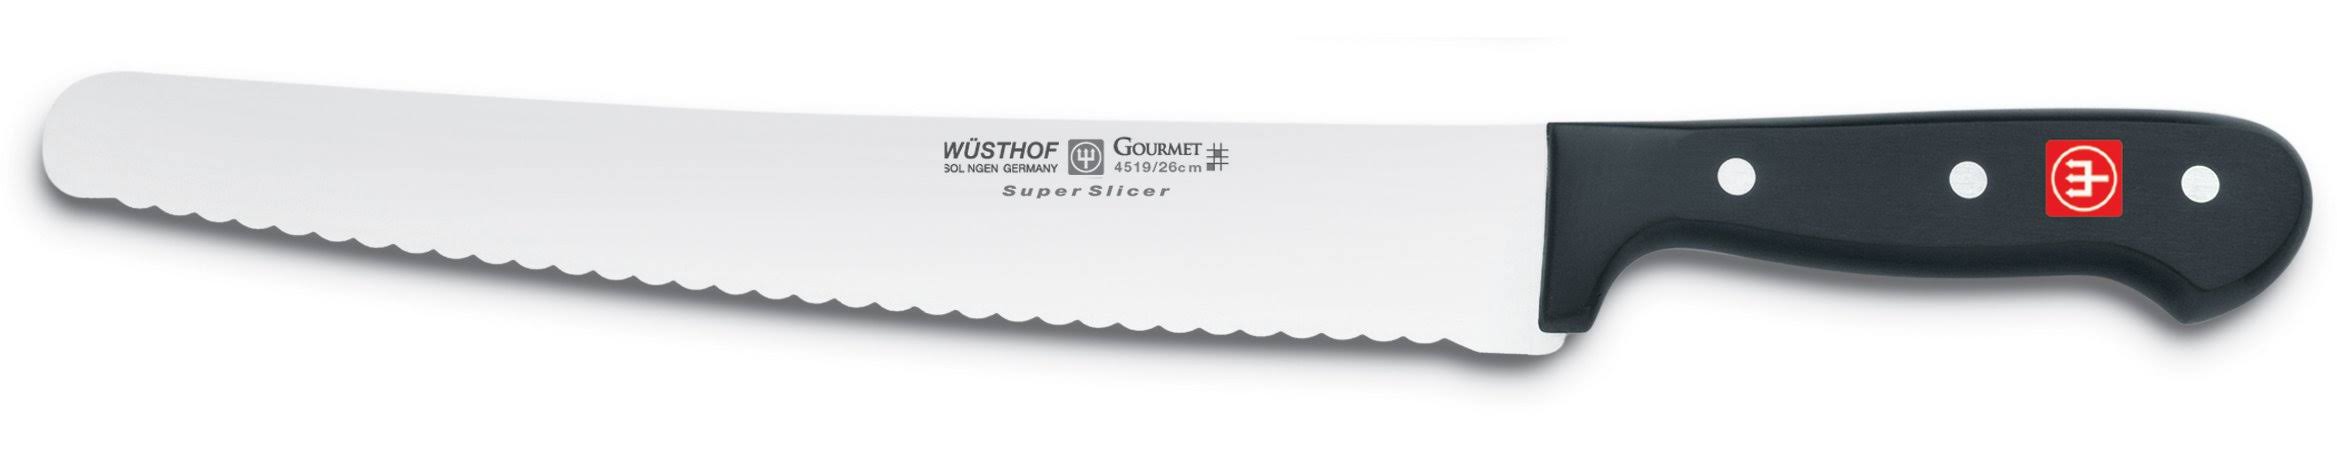 Wusthof 4519 Gourmet 10-Inch Super Slicer Knife